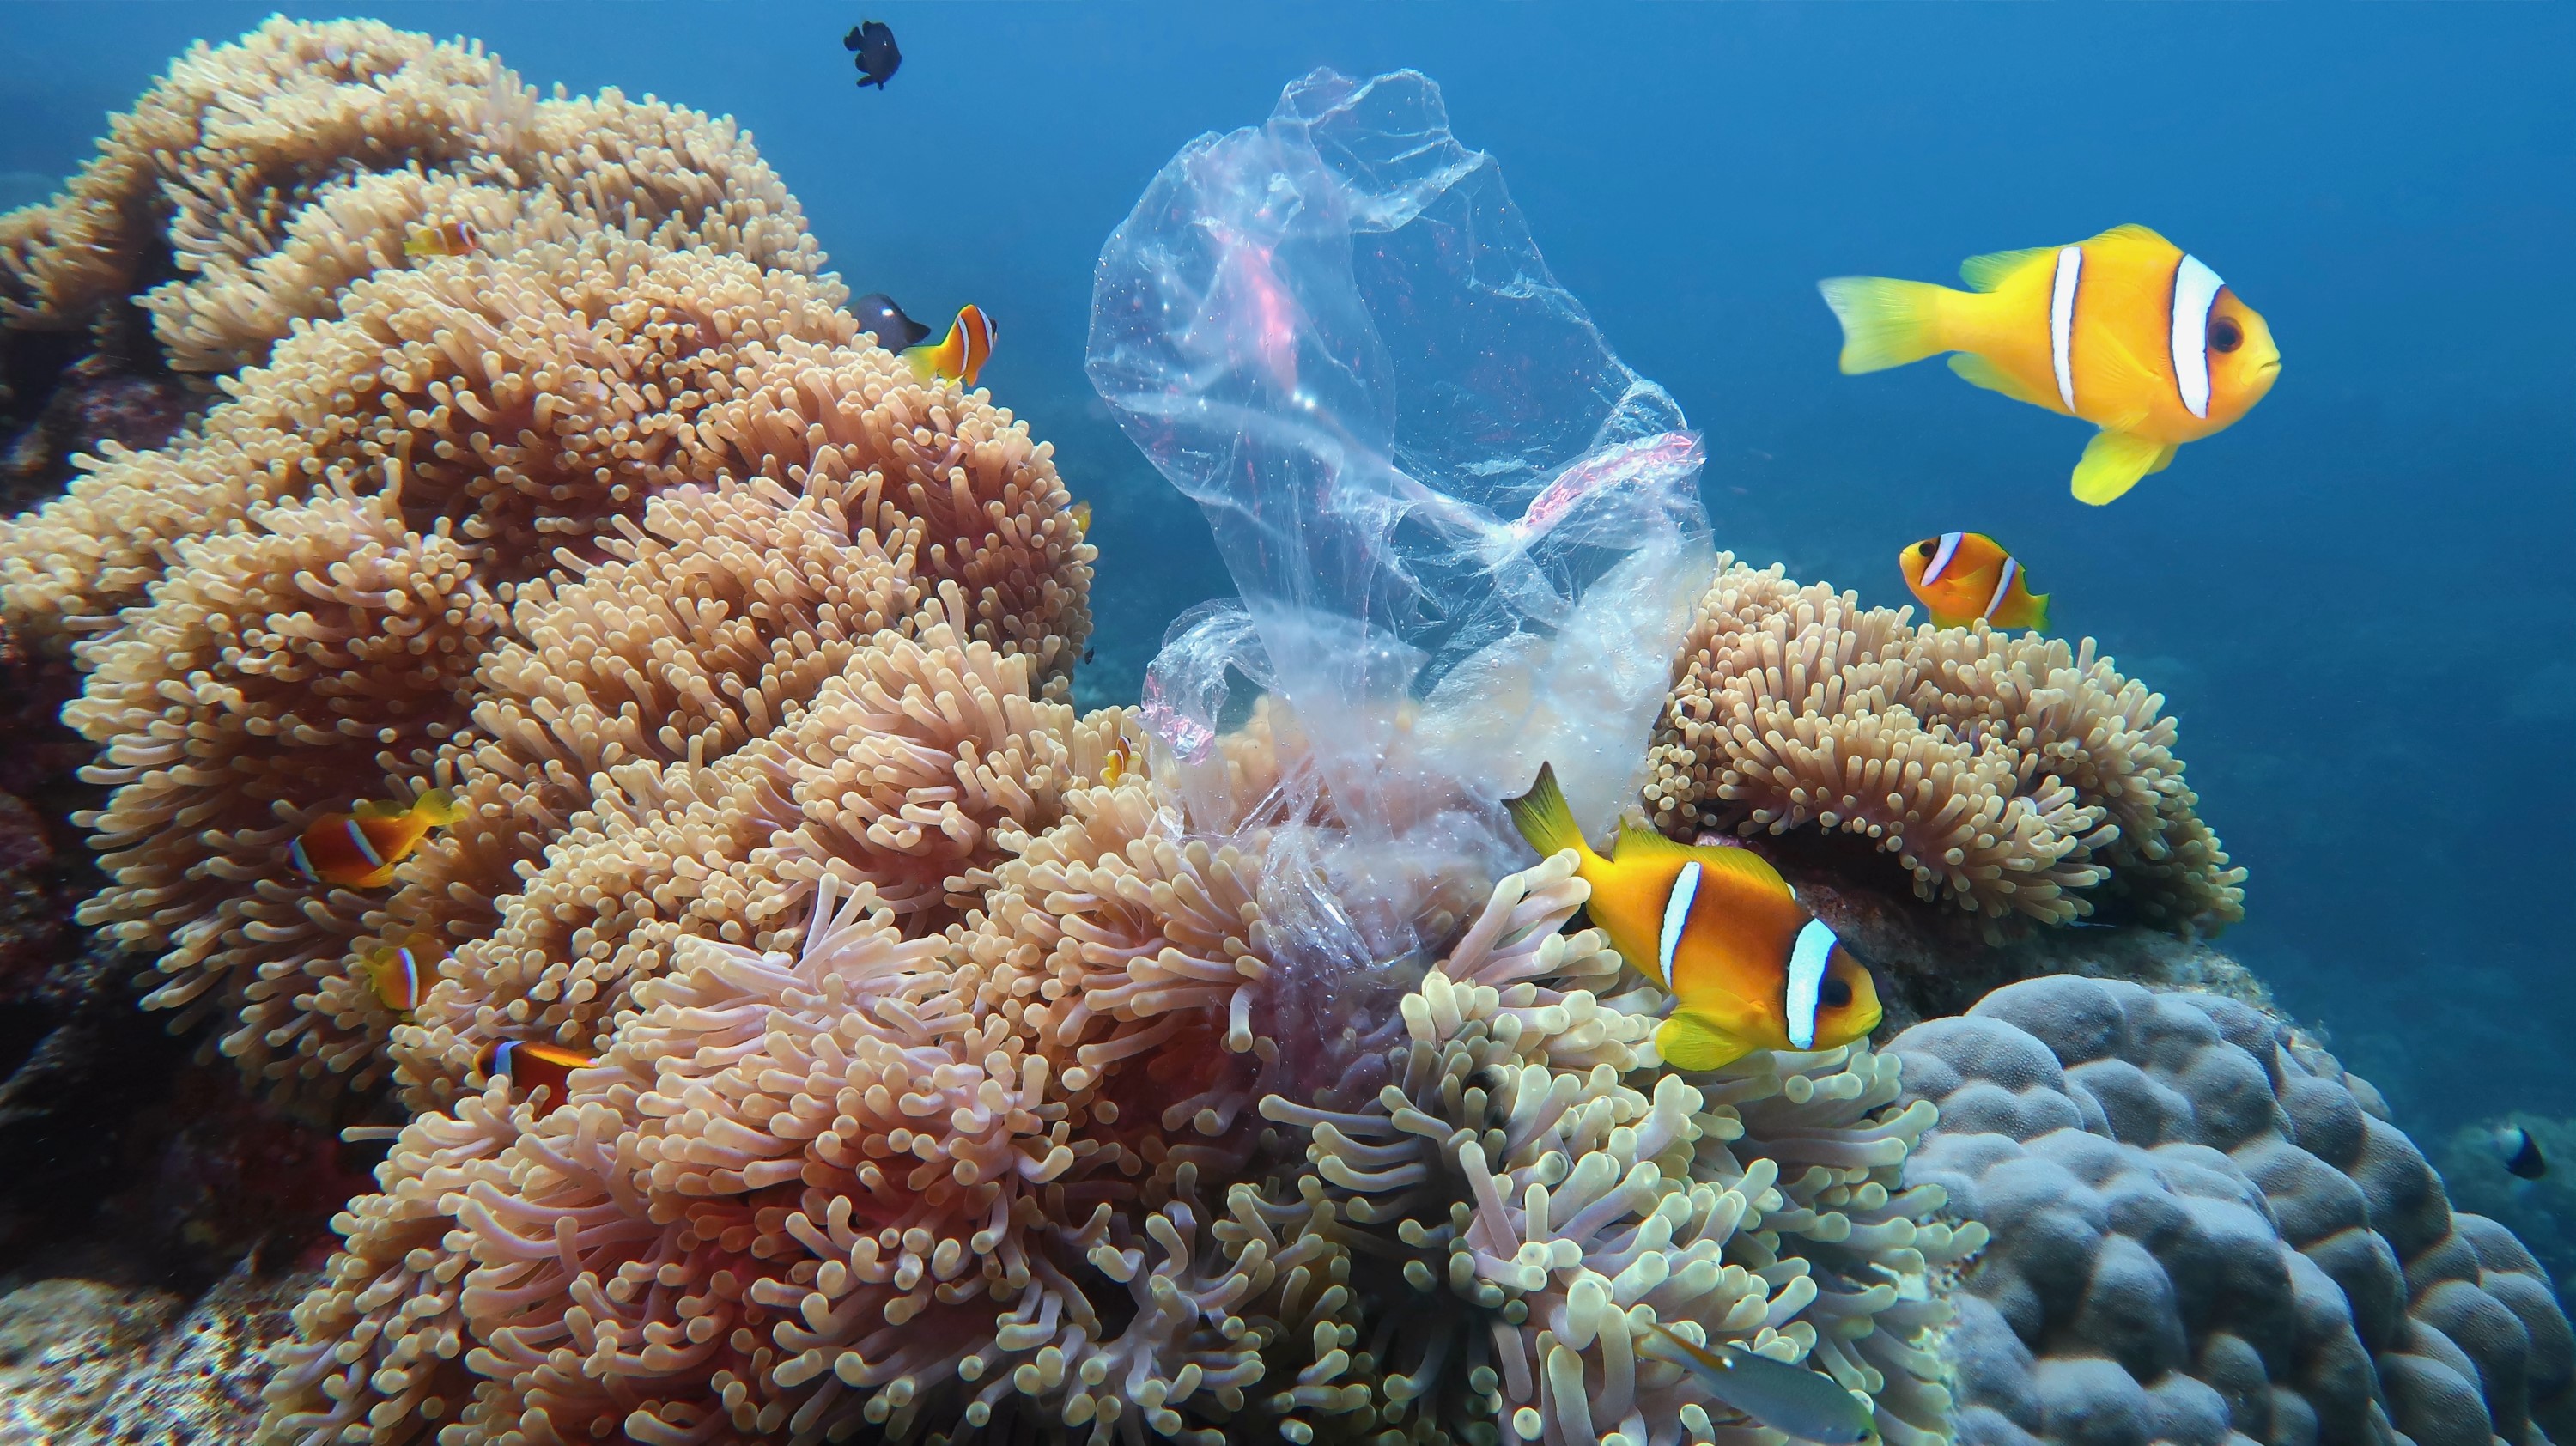 לרגל יום האוקיינוסים הבינלאומי שחל ב 8.6 הרבלייף העולמית הכריזה על שותפות עם 'פלסטיק בנק' במטרה לשפר את מצב האוקיינוסים בעולם